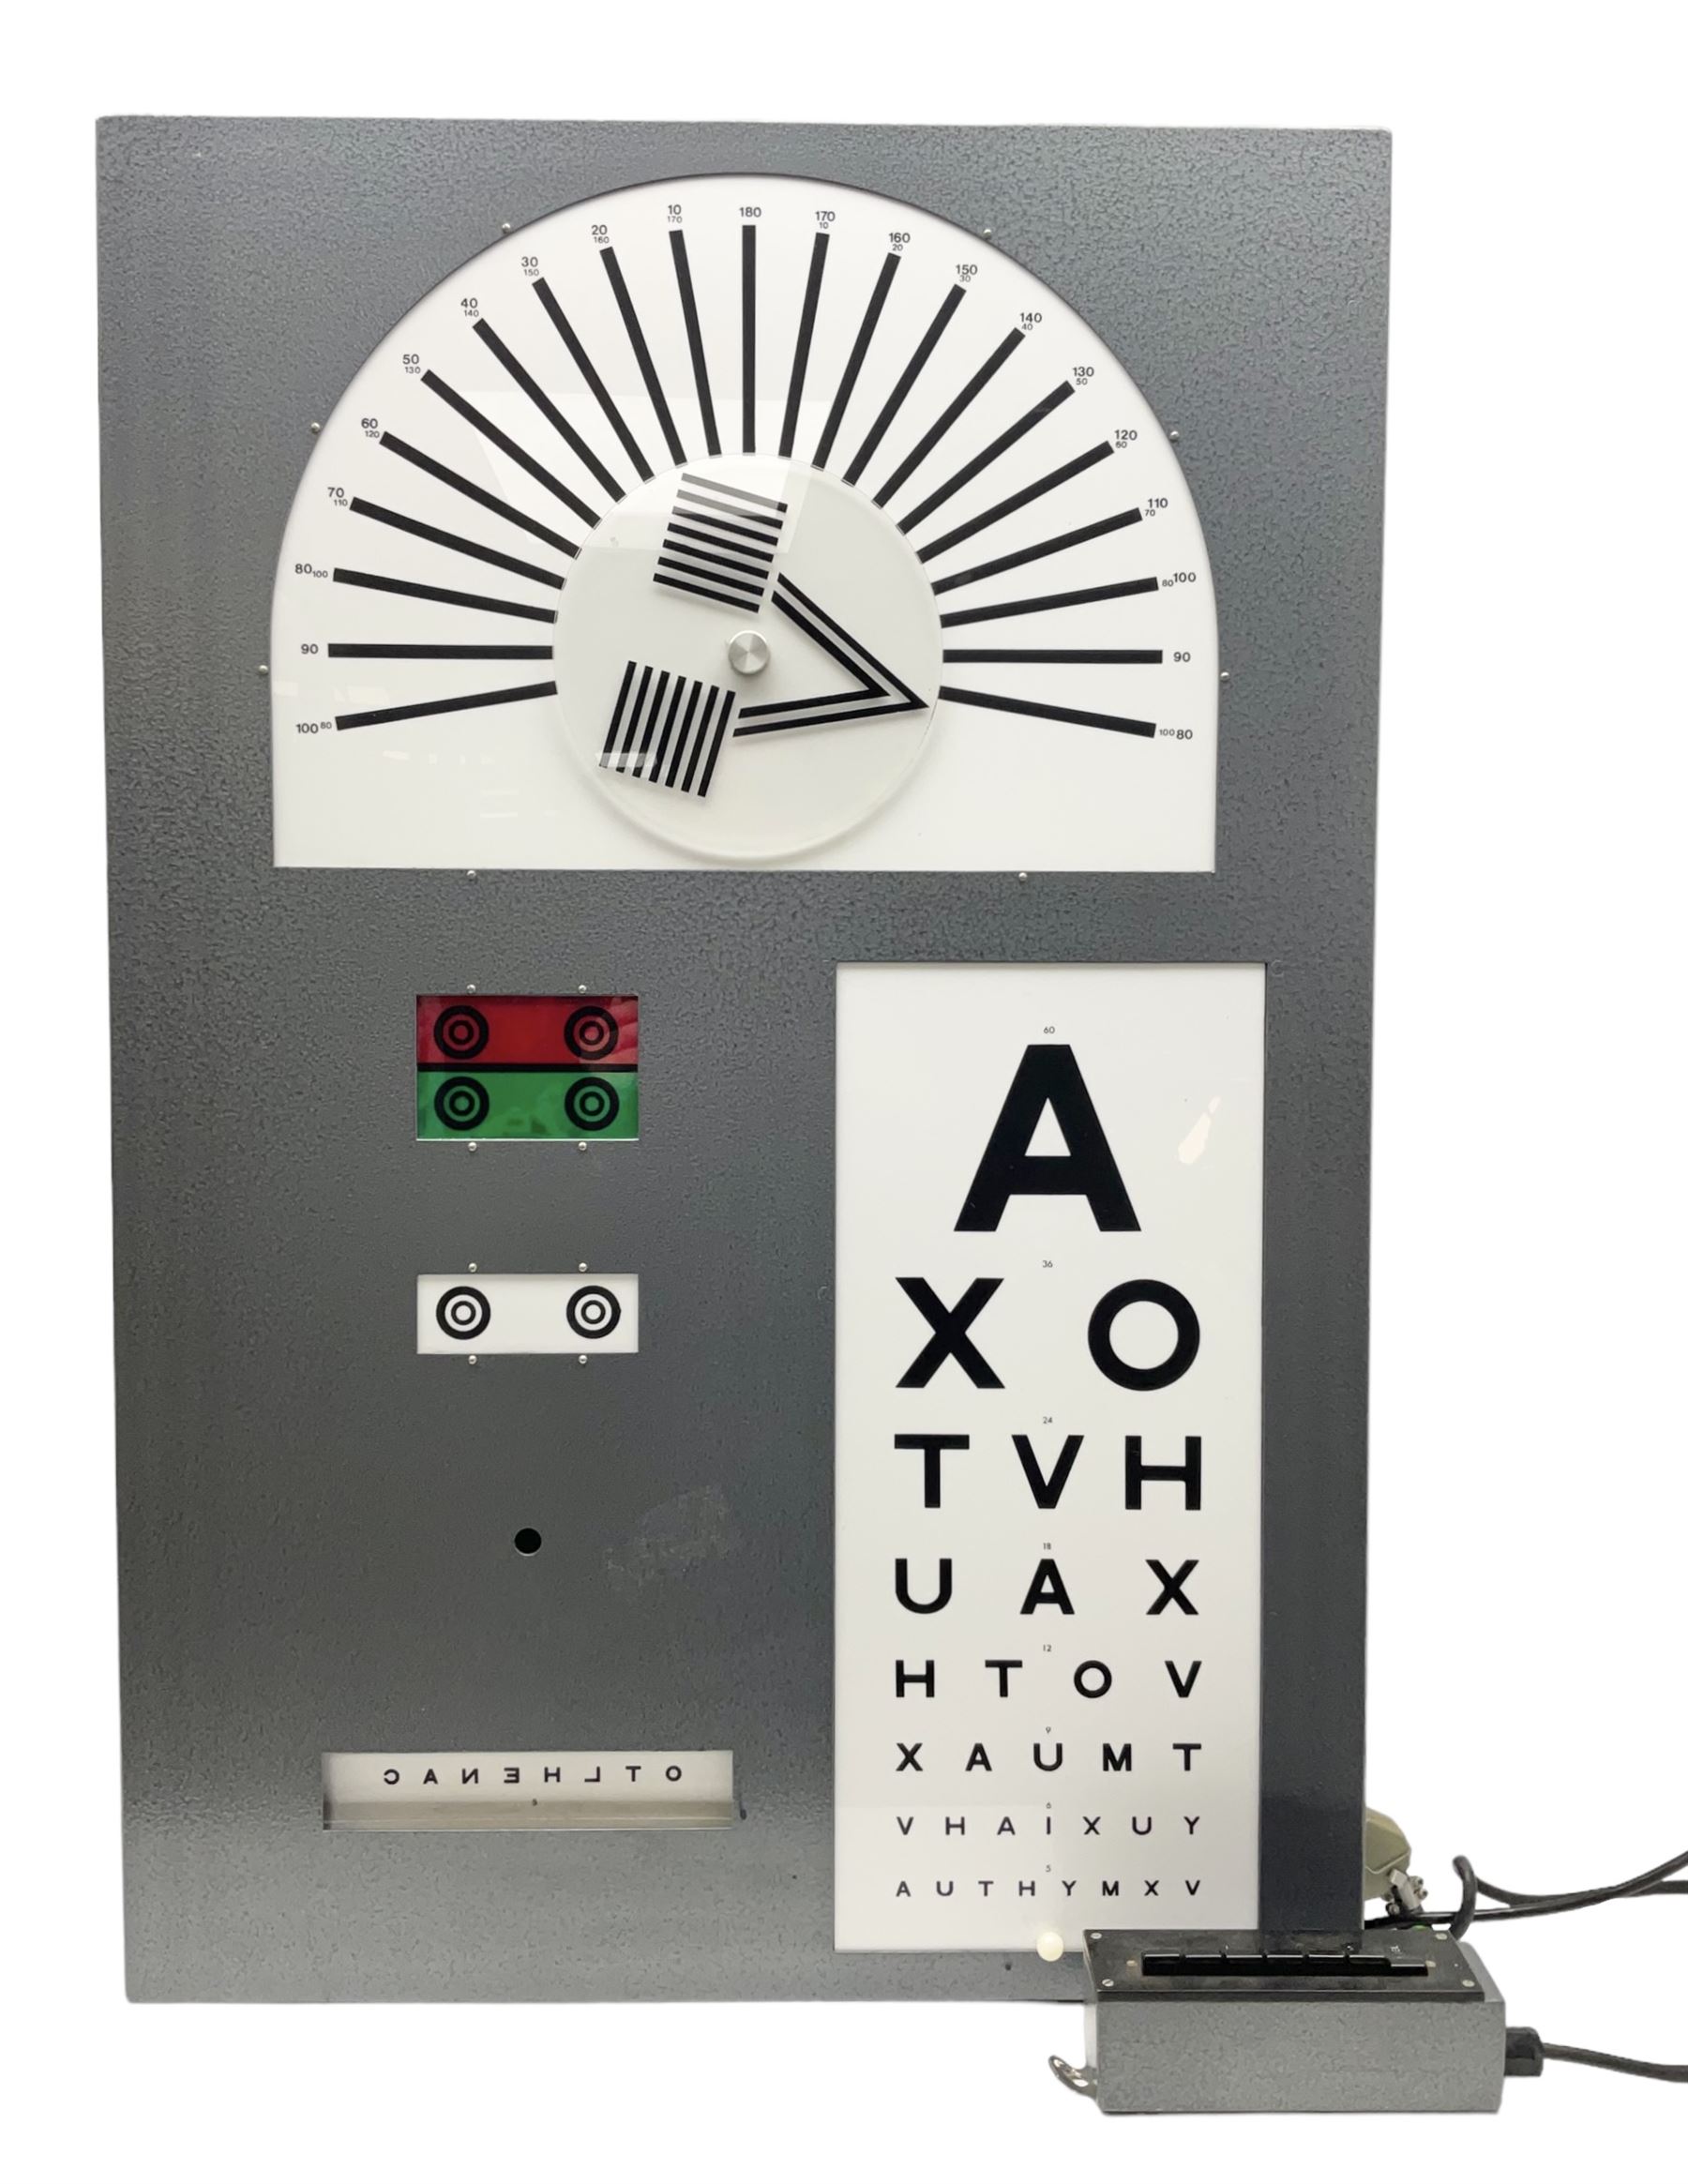 Mid 20th century optician's illuminated eye test chart